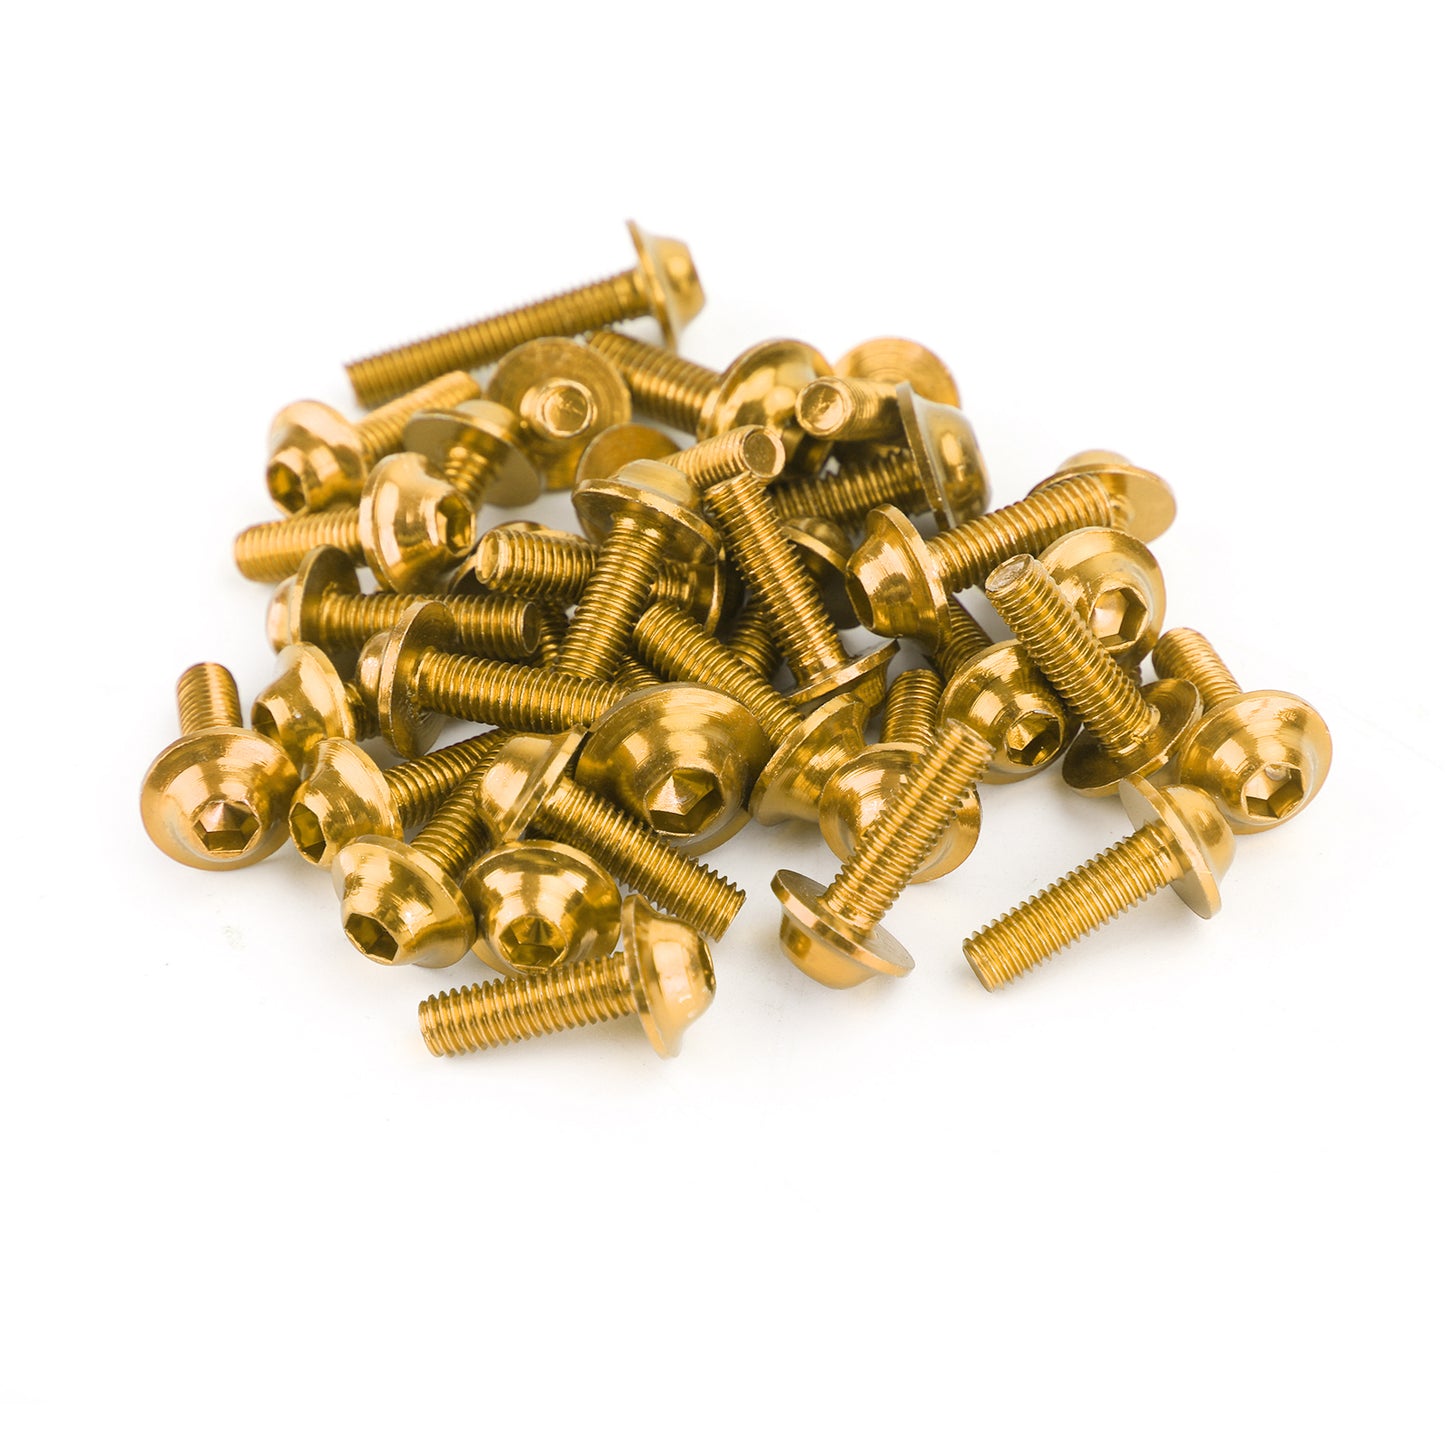 158 teilig -Gold Alu Verkleidungsschraube Verkleidung M5/M6 Schrauben Set